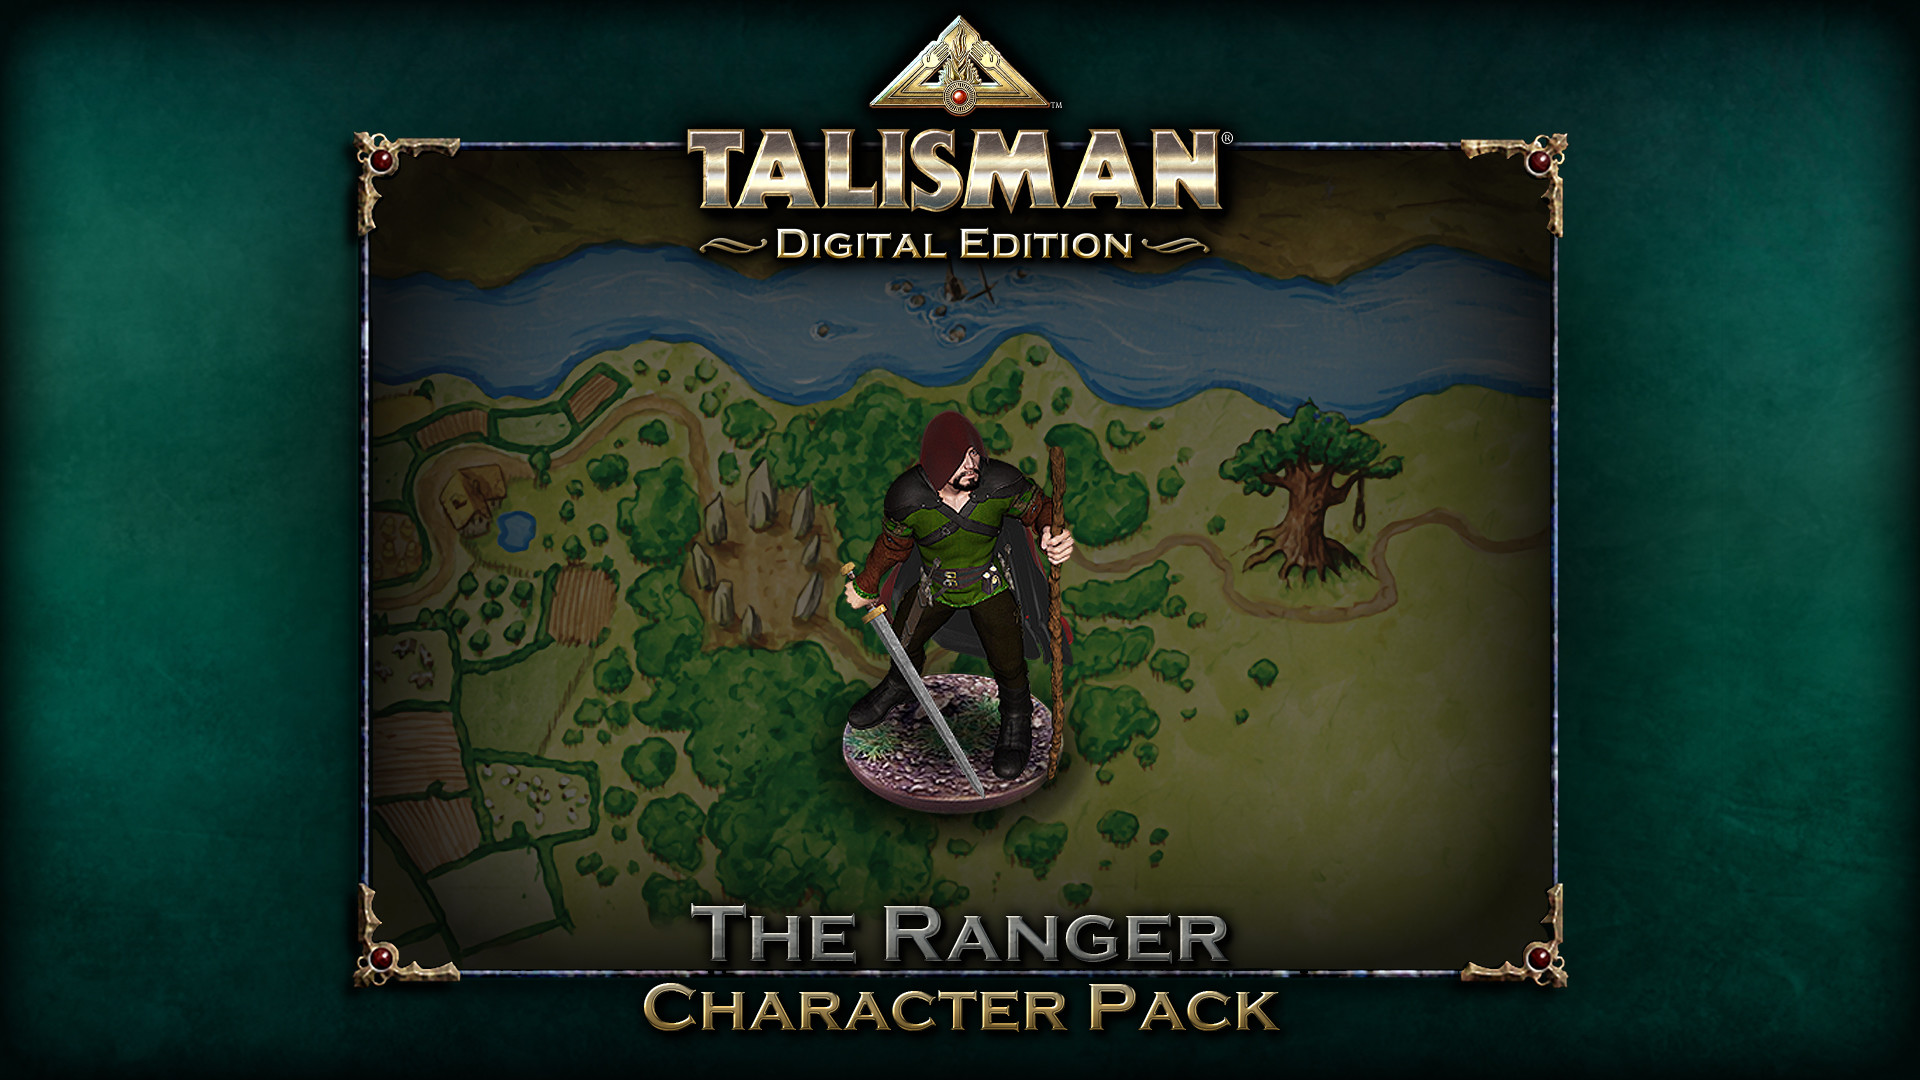 [$ 0.86] Talisman - Character Pack #20 Ranger DLC Steam CD Key